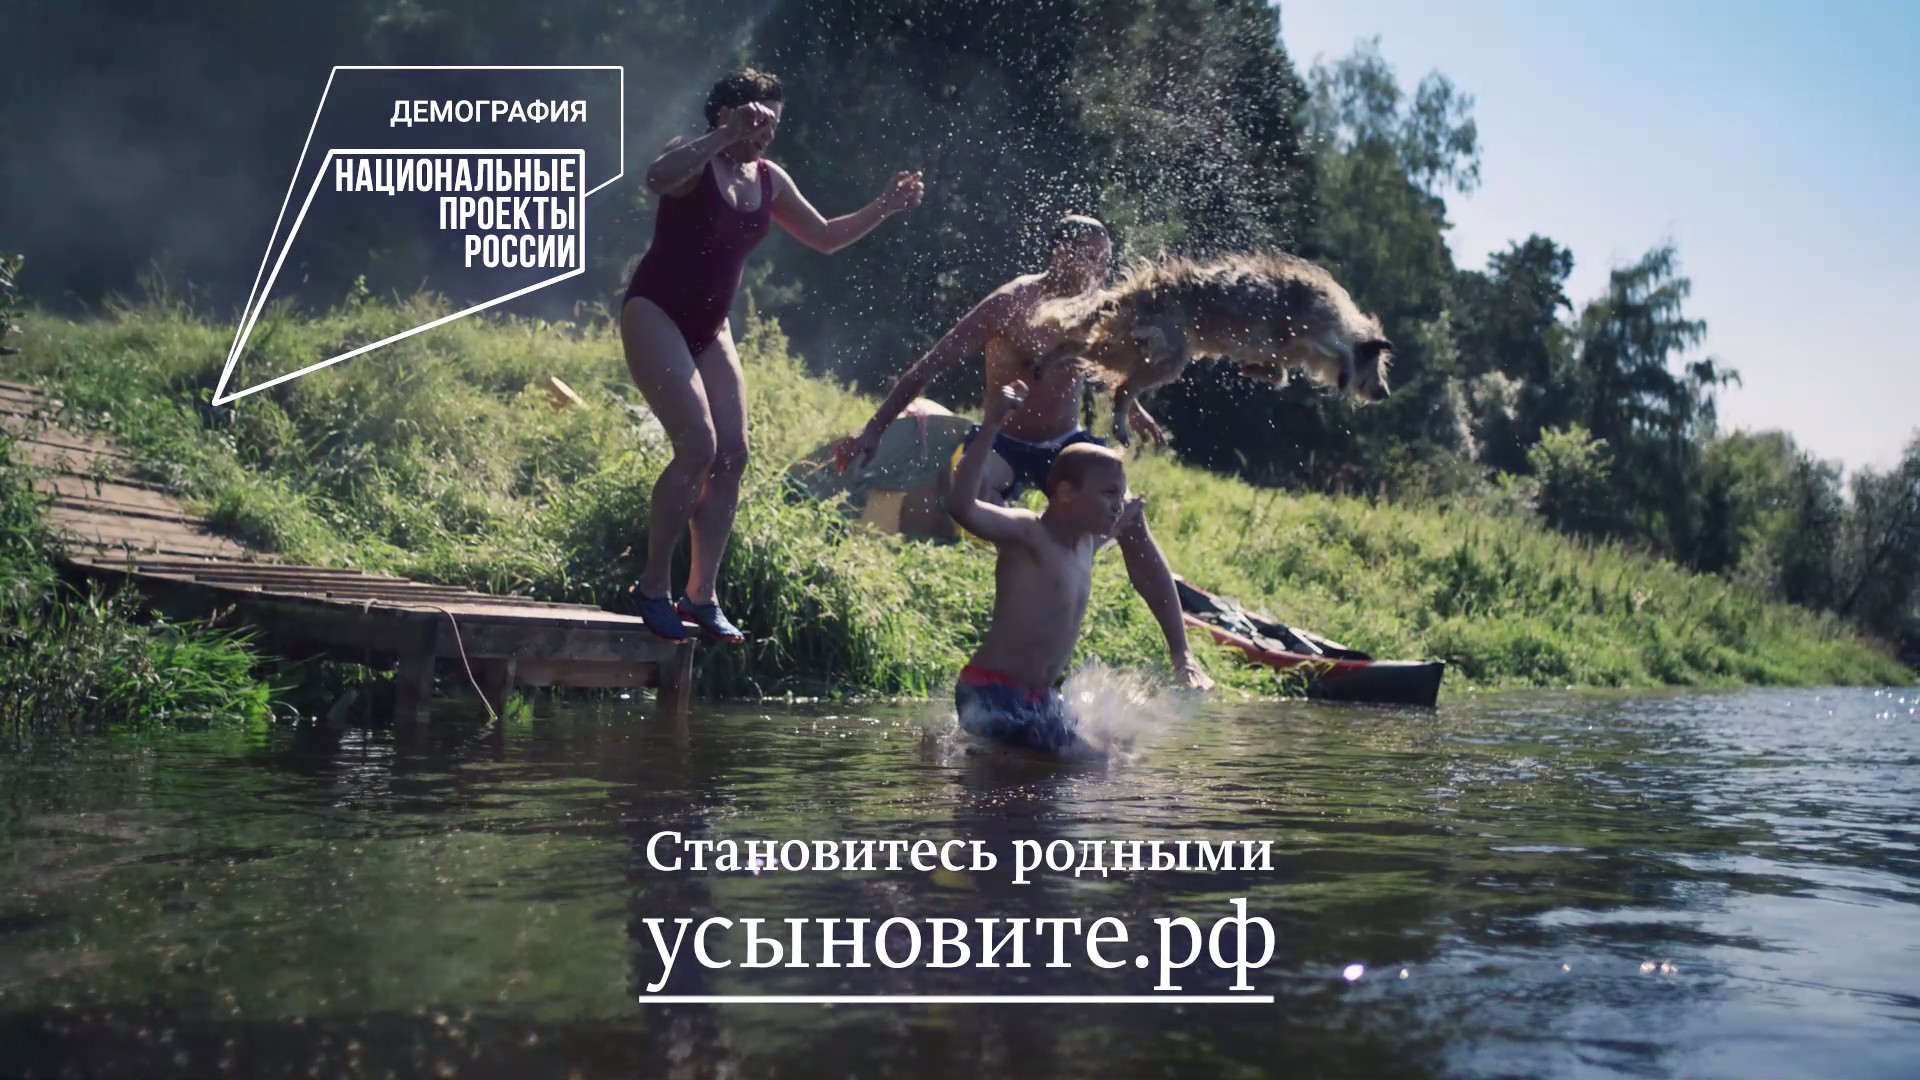 В России стартовала социальная кампания о том, как приемные дети становятся родными.